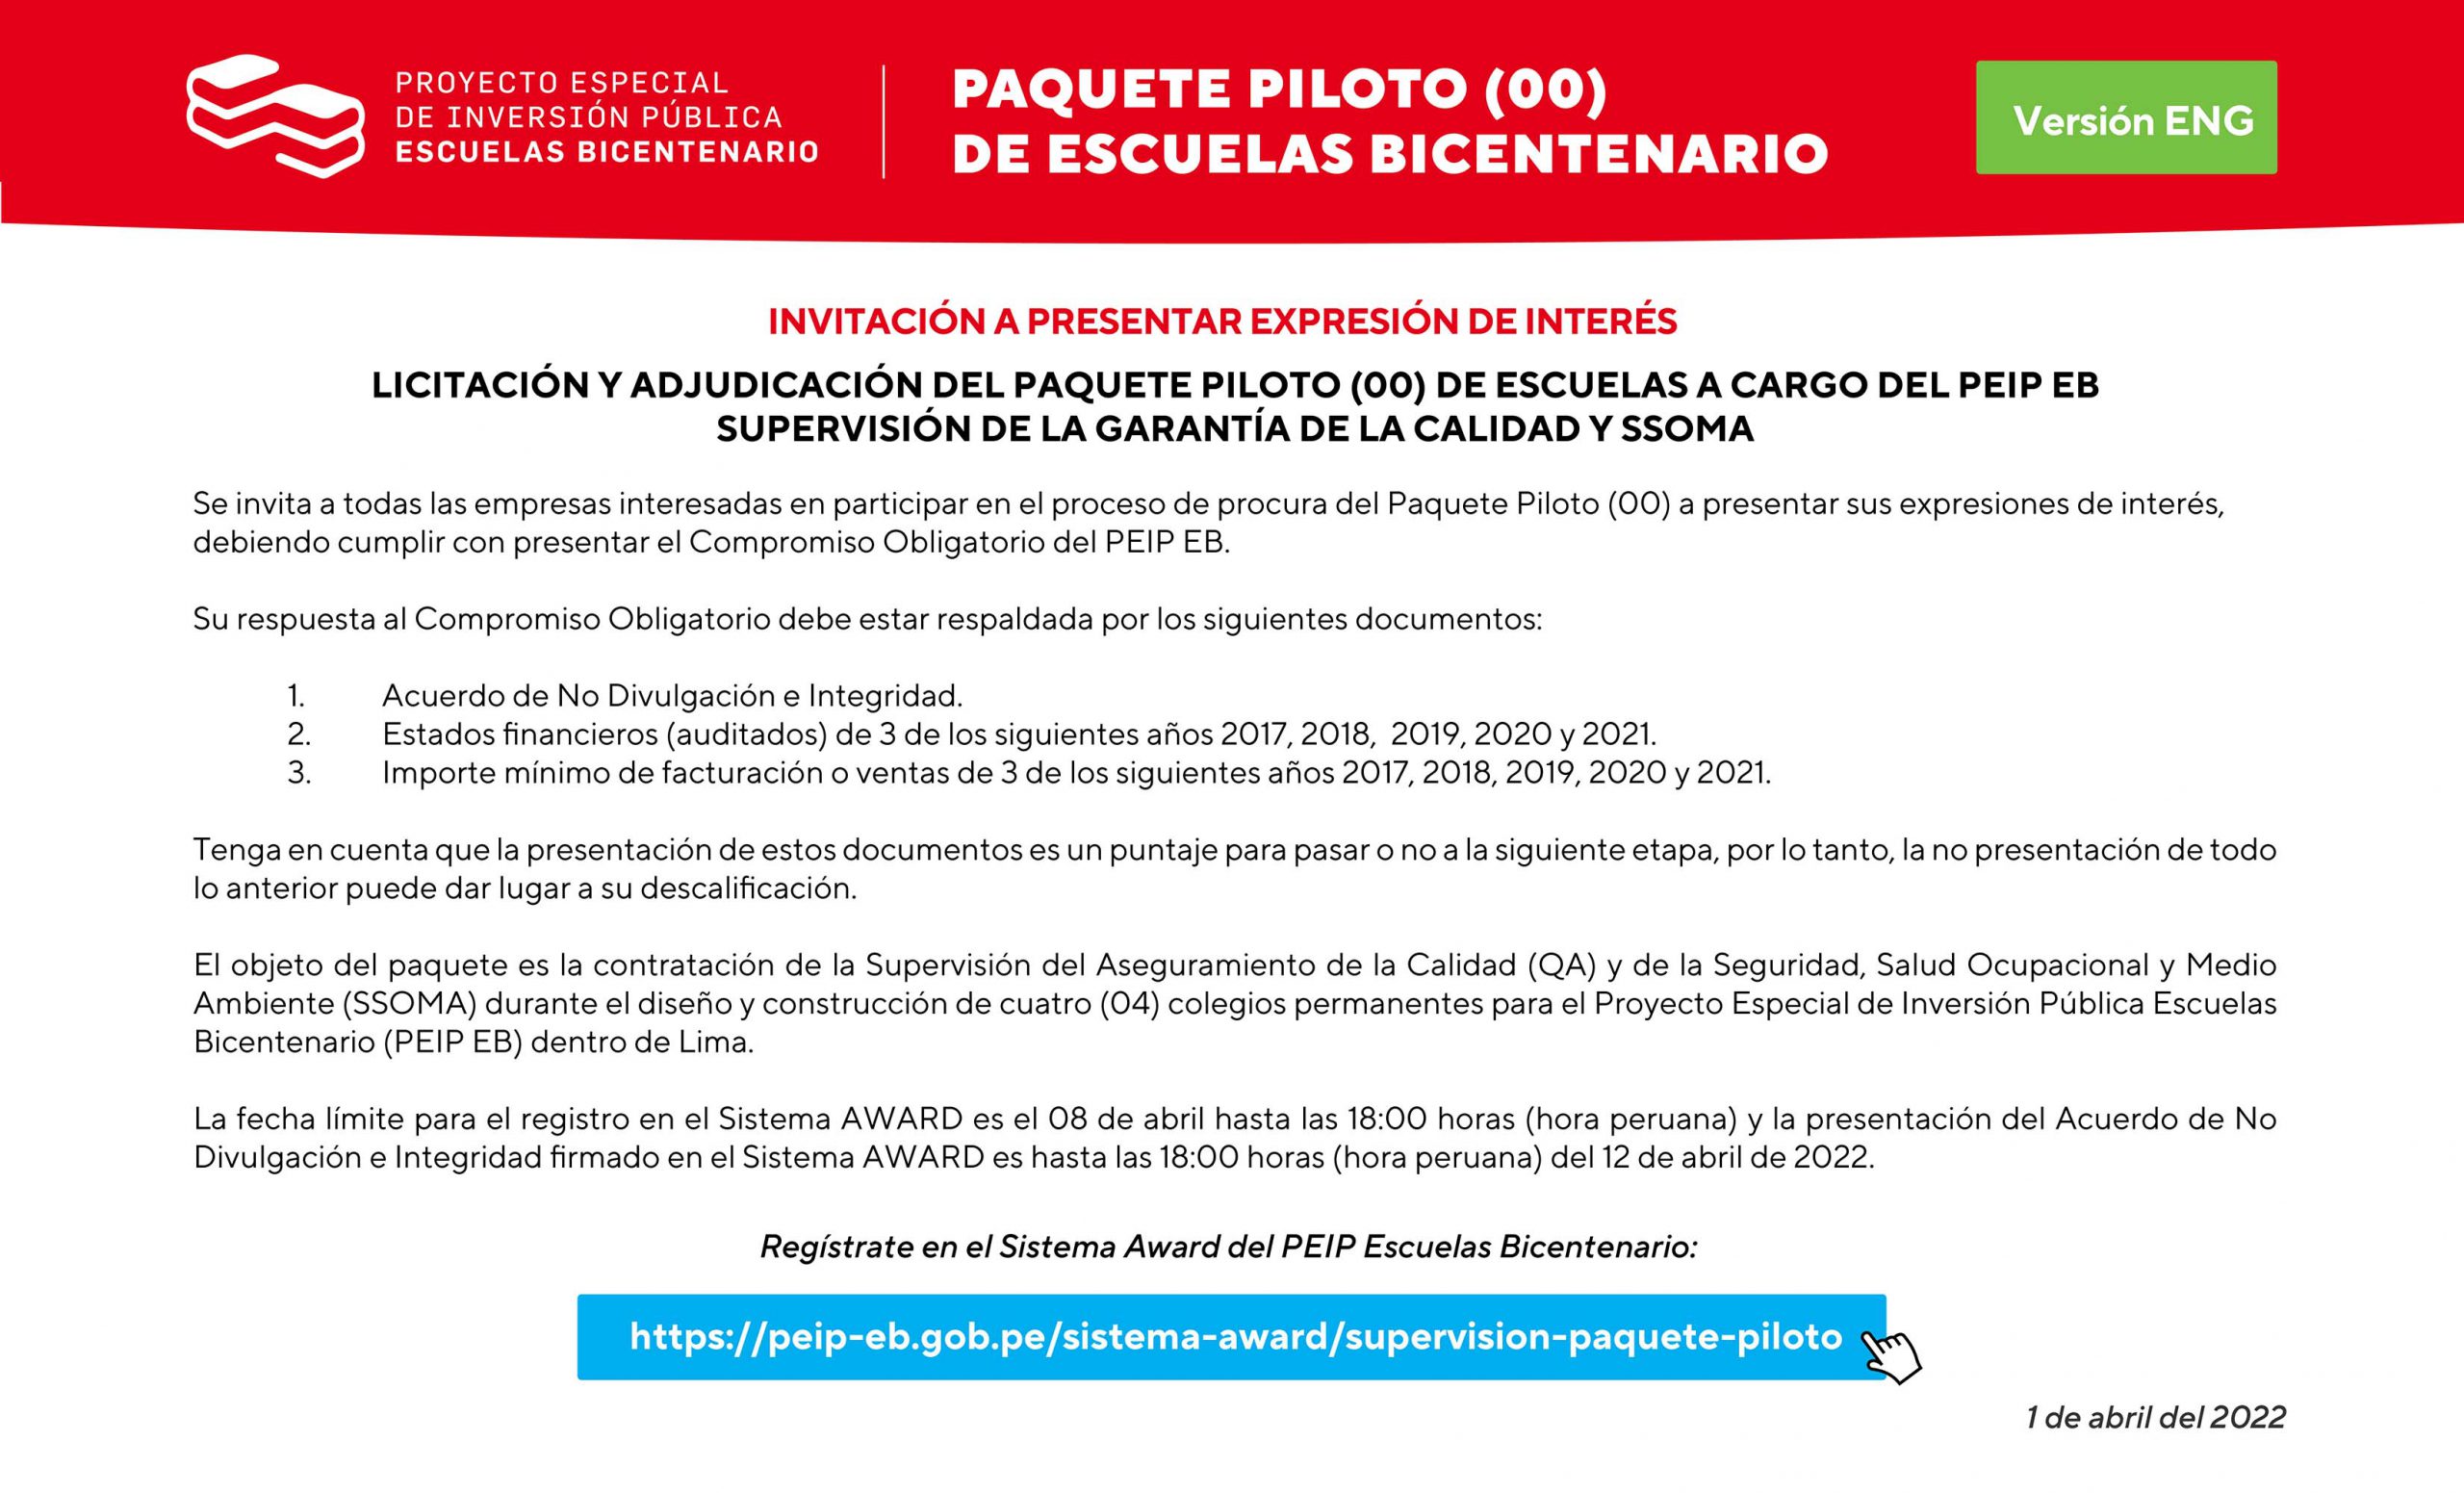 INVITACIÓN A PRESENTAR EXPRESIÓN DE INTERÉS - PAQUETE PILOTO (00)